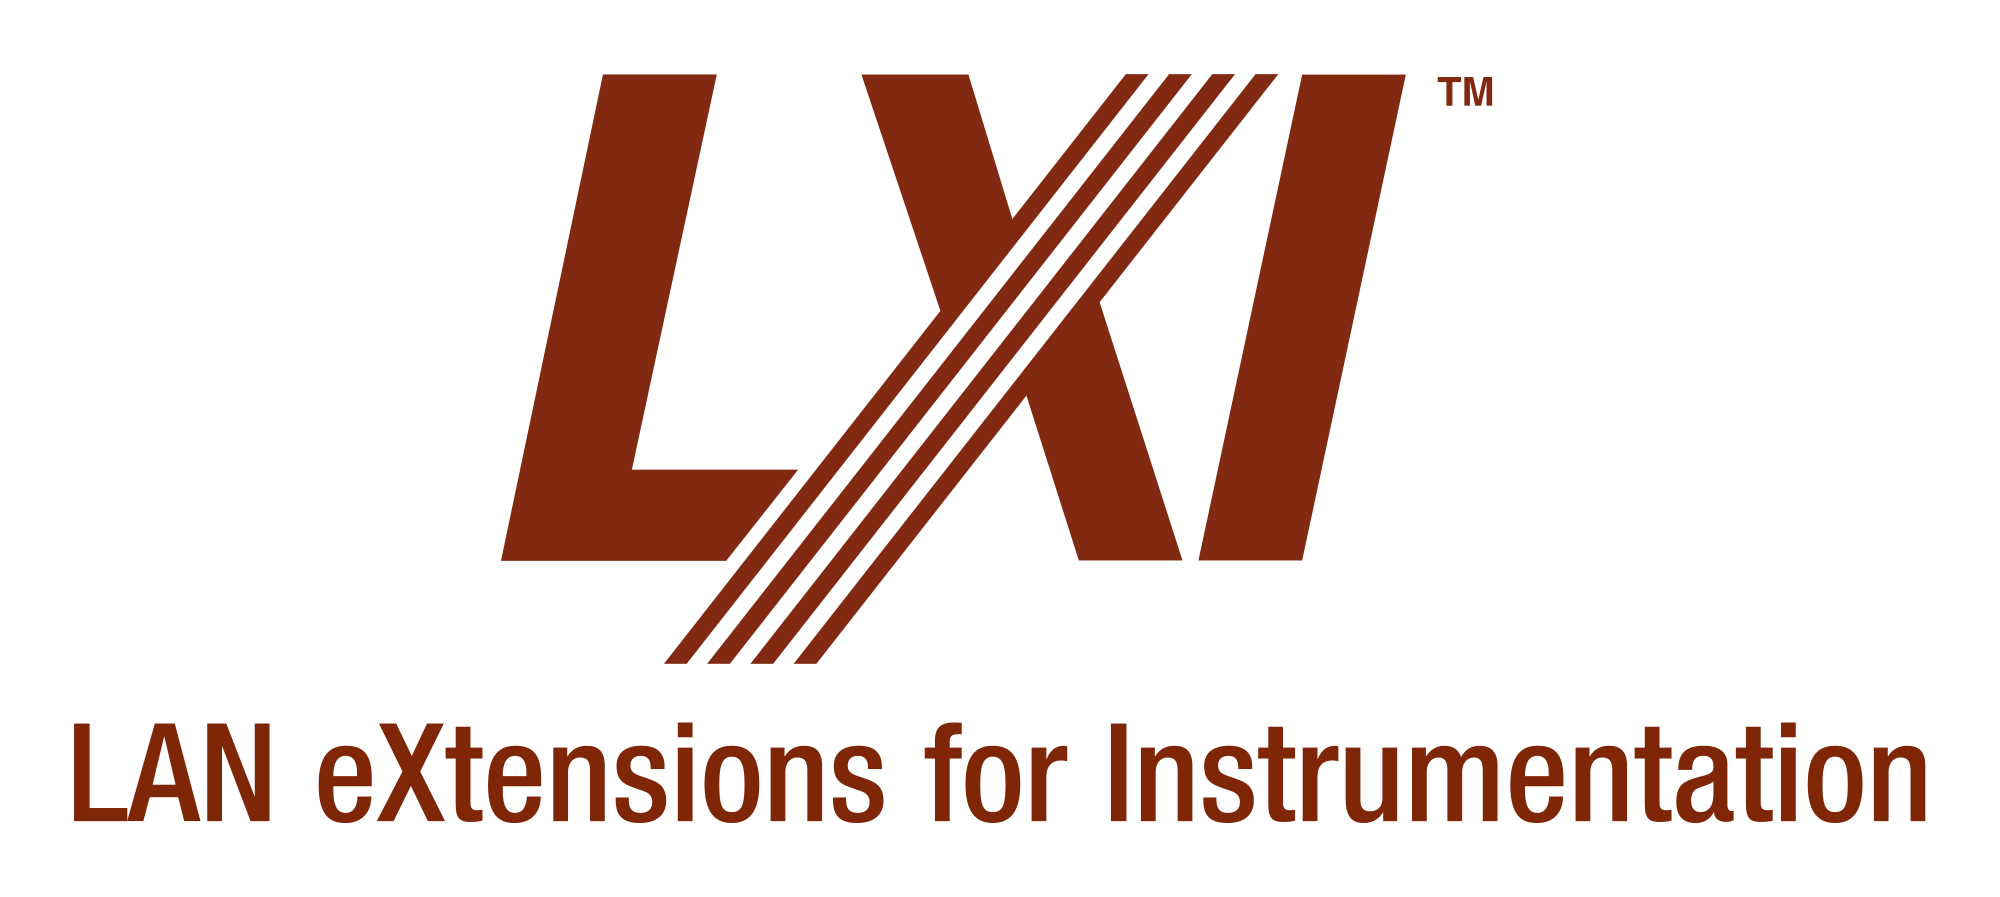 LXI Logo - File:LXI Logo.svg - Wikimedia Commons